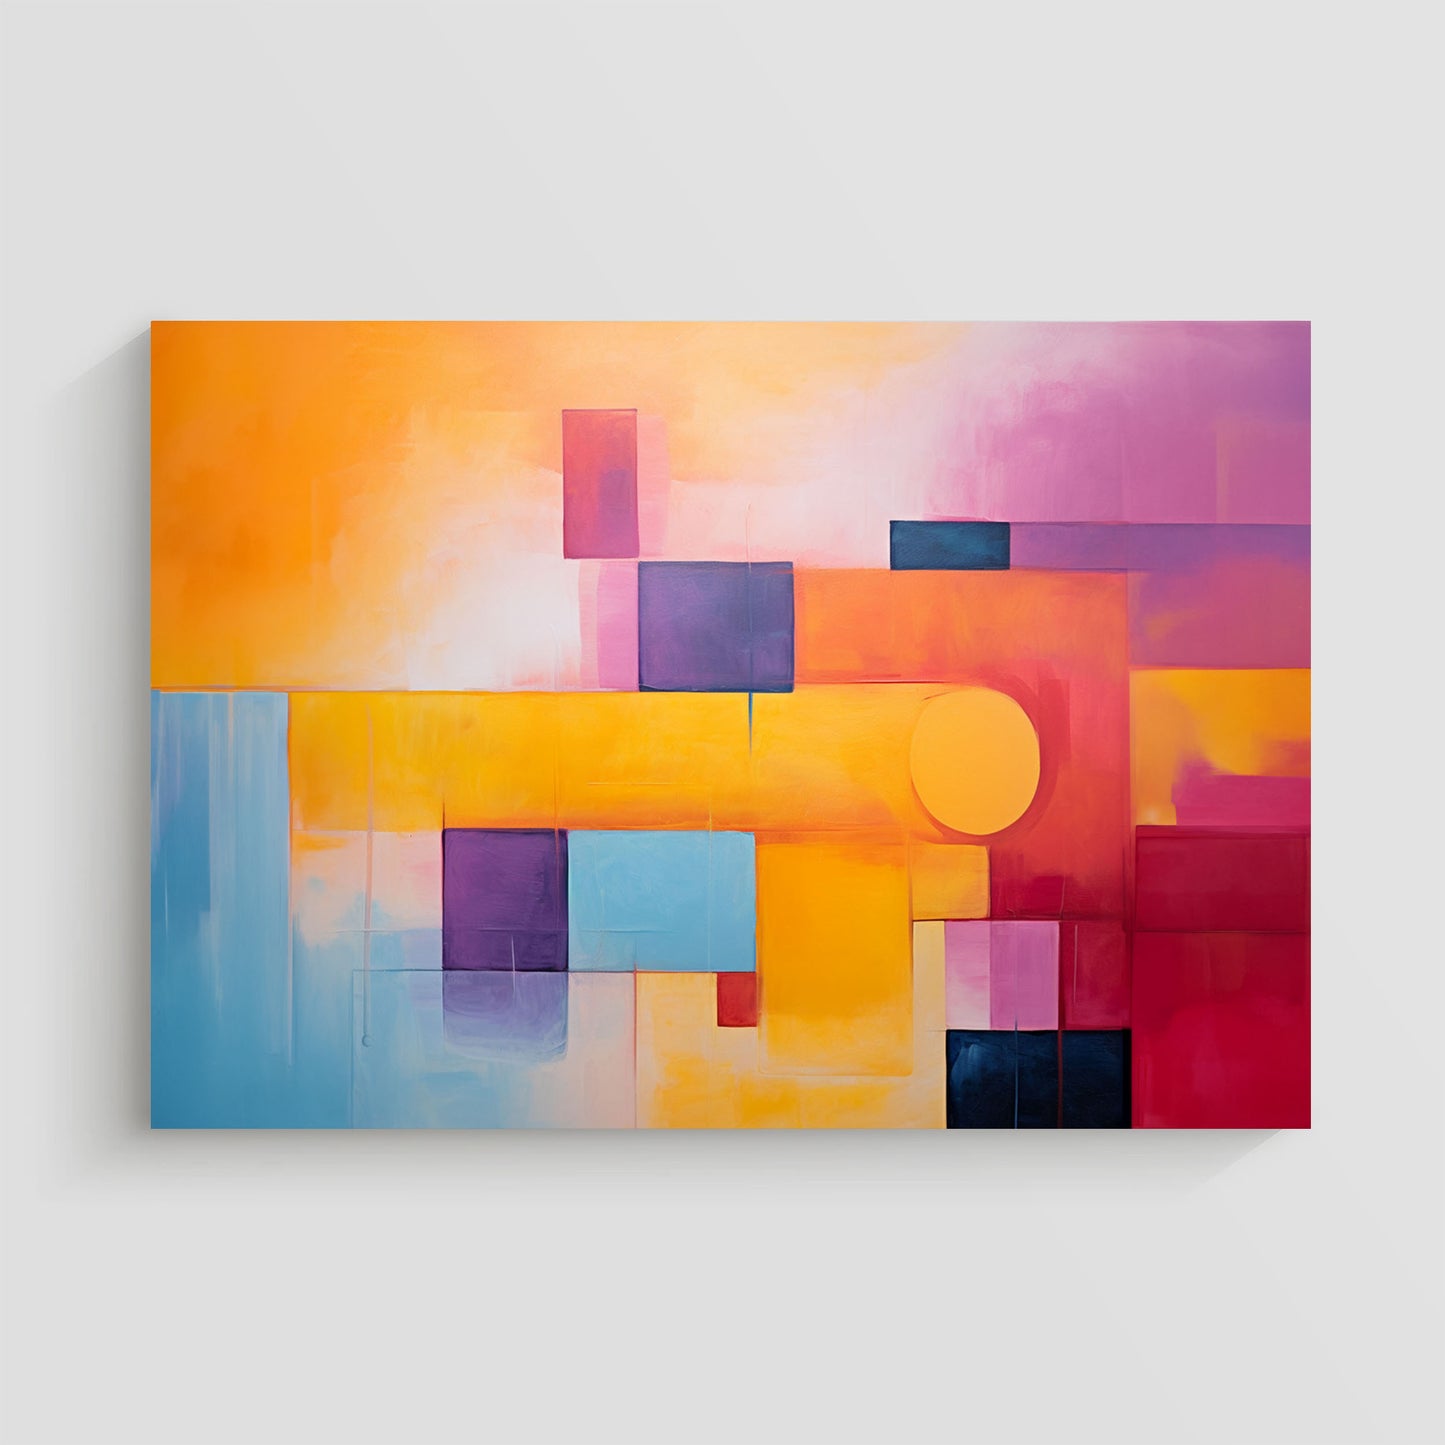 Arte abstracto con diseño geométrico en colores amarillo, naranja, púrpura y azul.